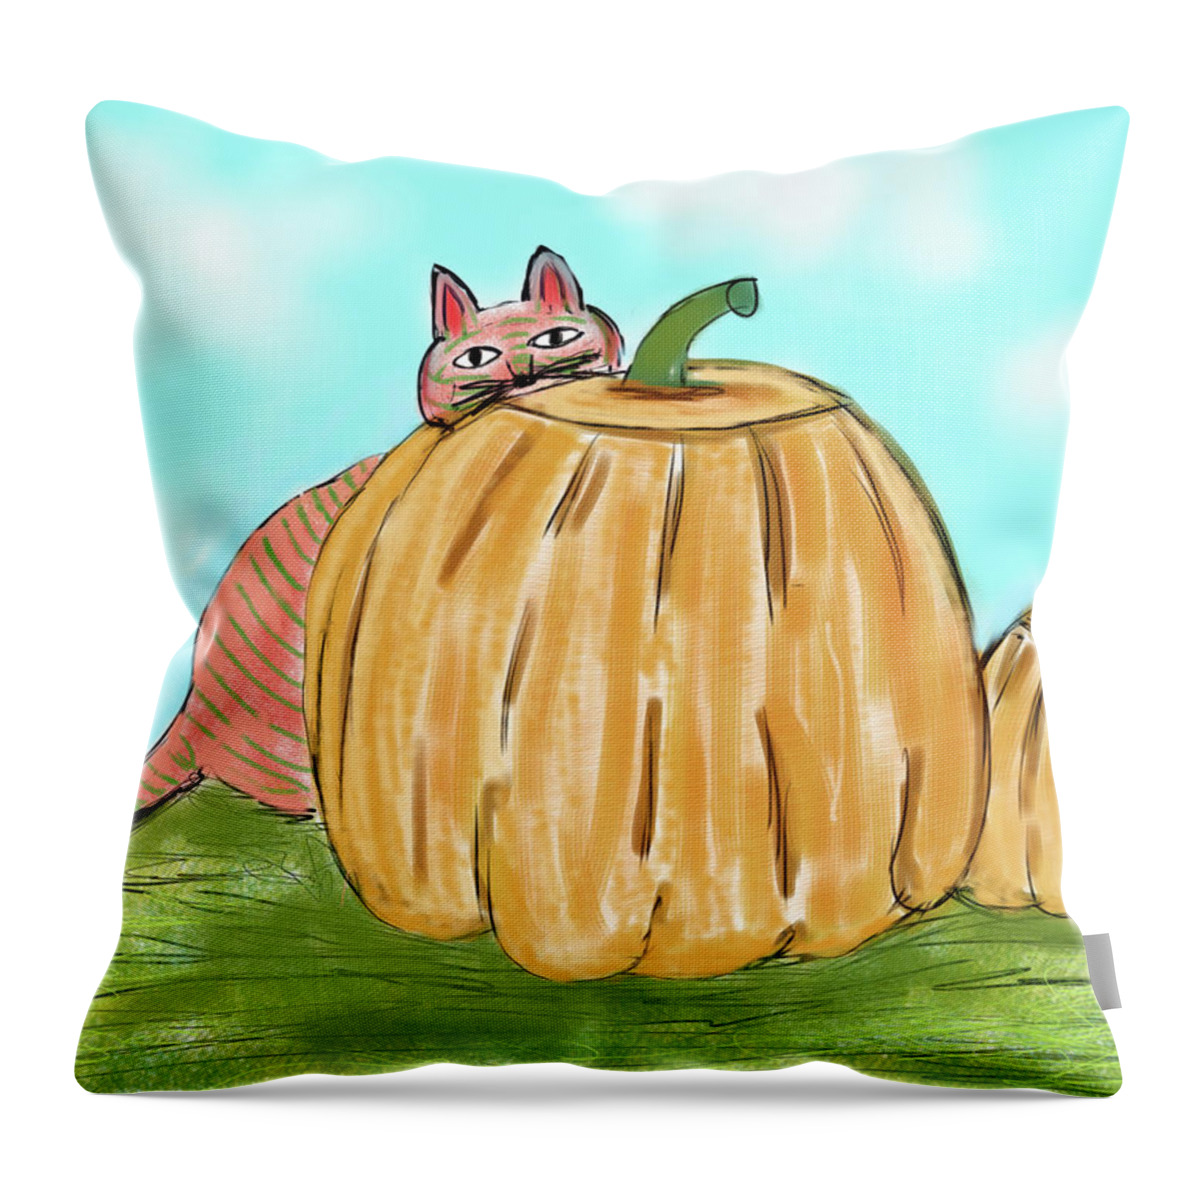 Landscape Throw Pillow featuring the digital art Pumpkin Cat by Christina Wedberg